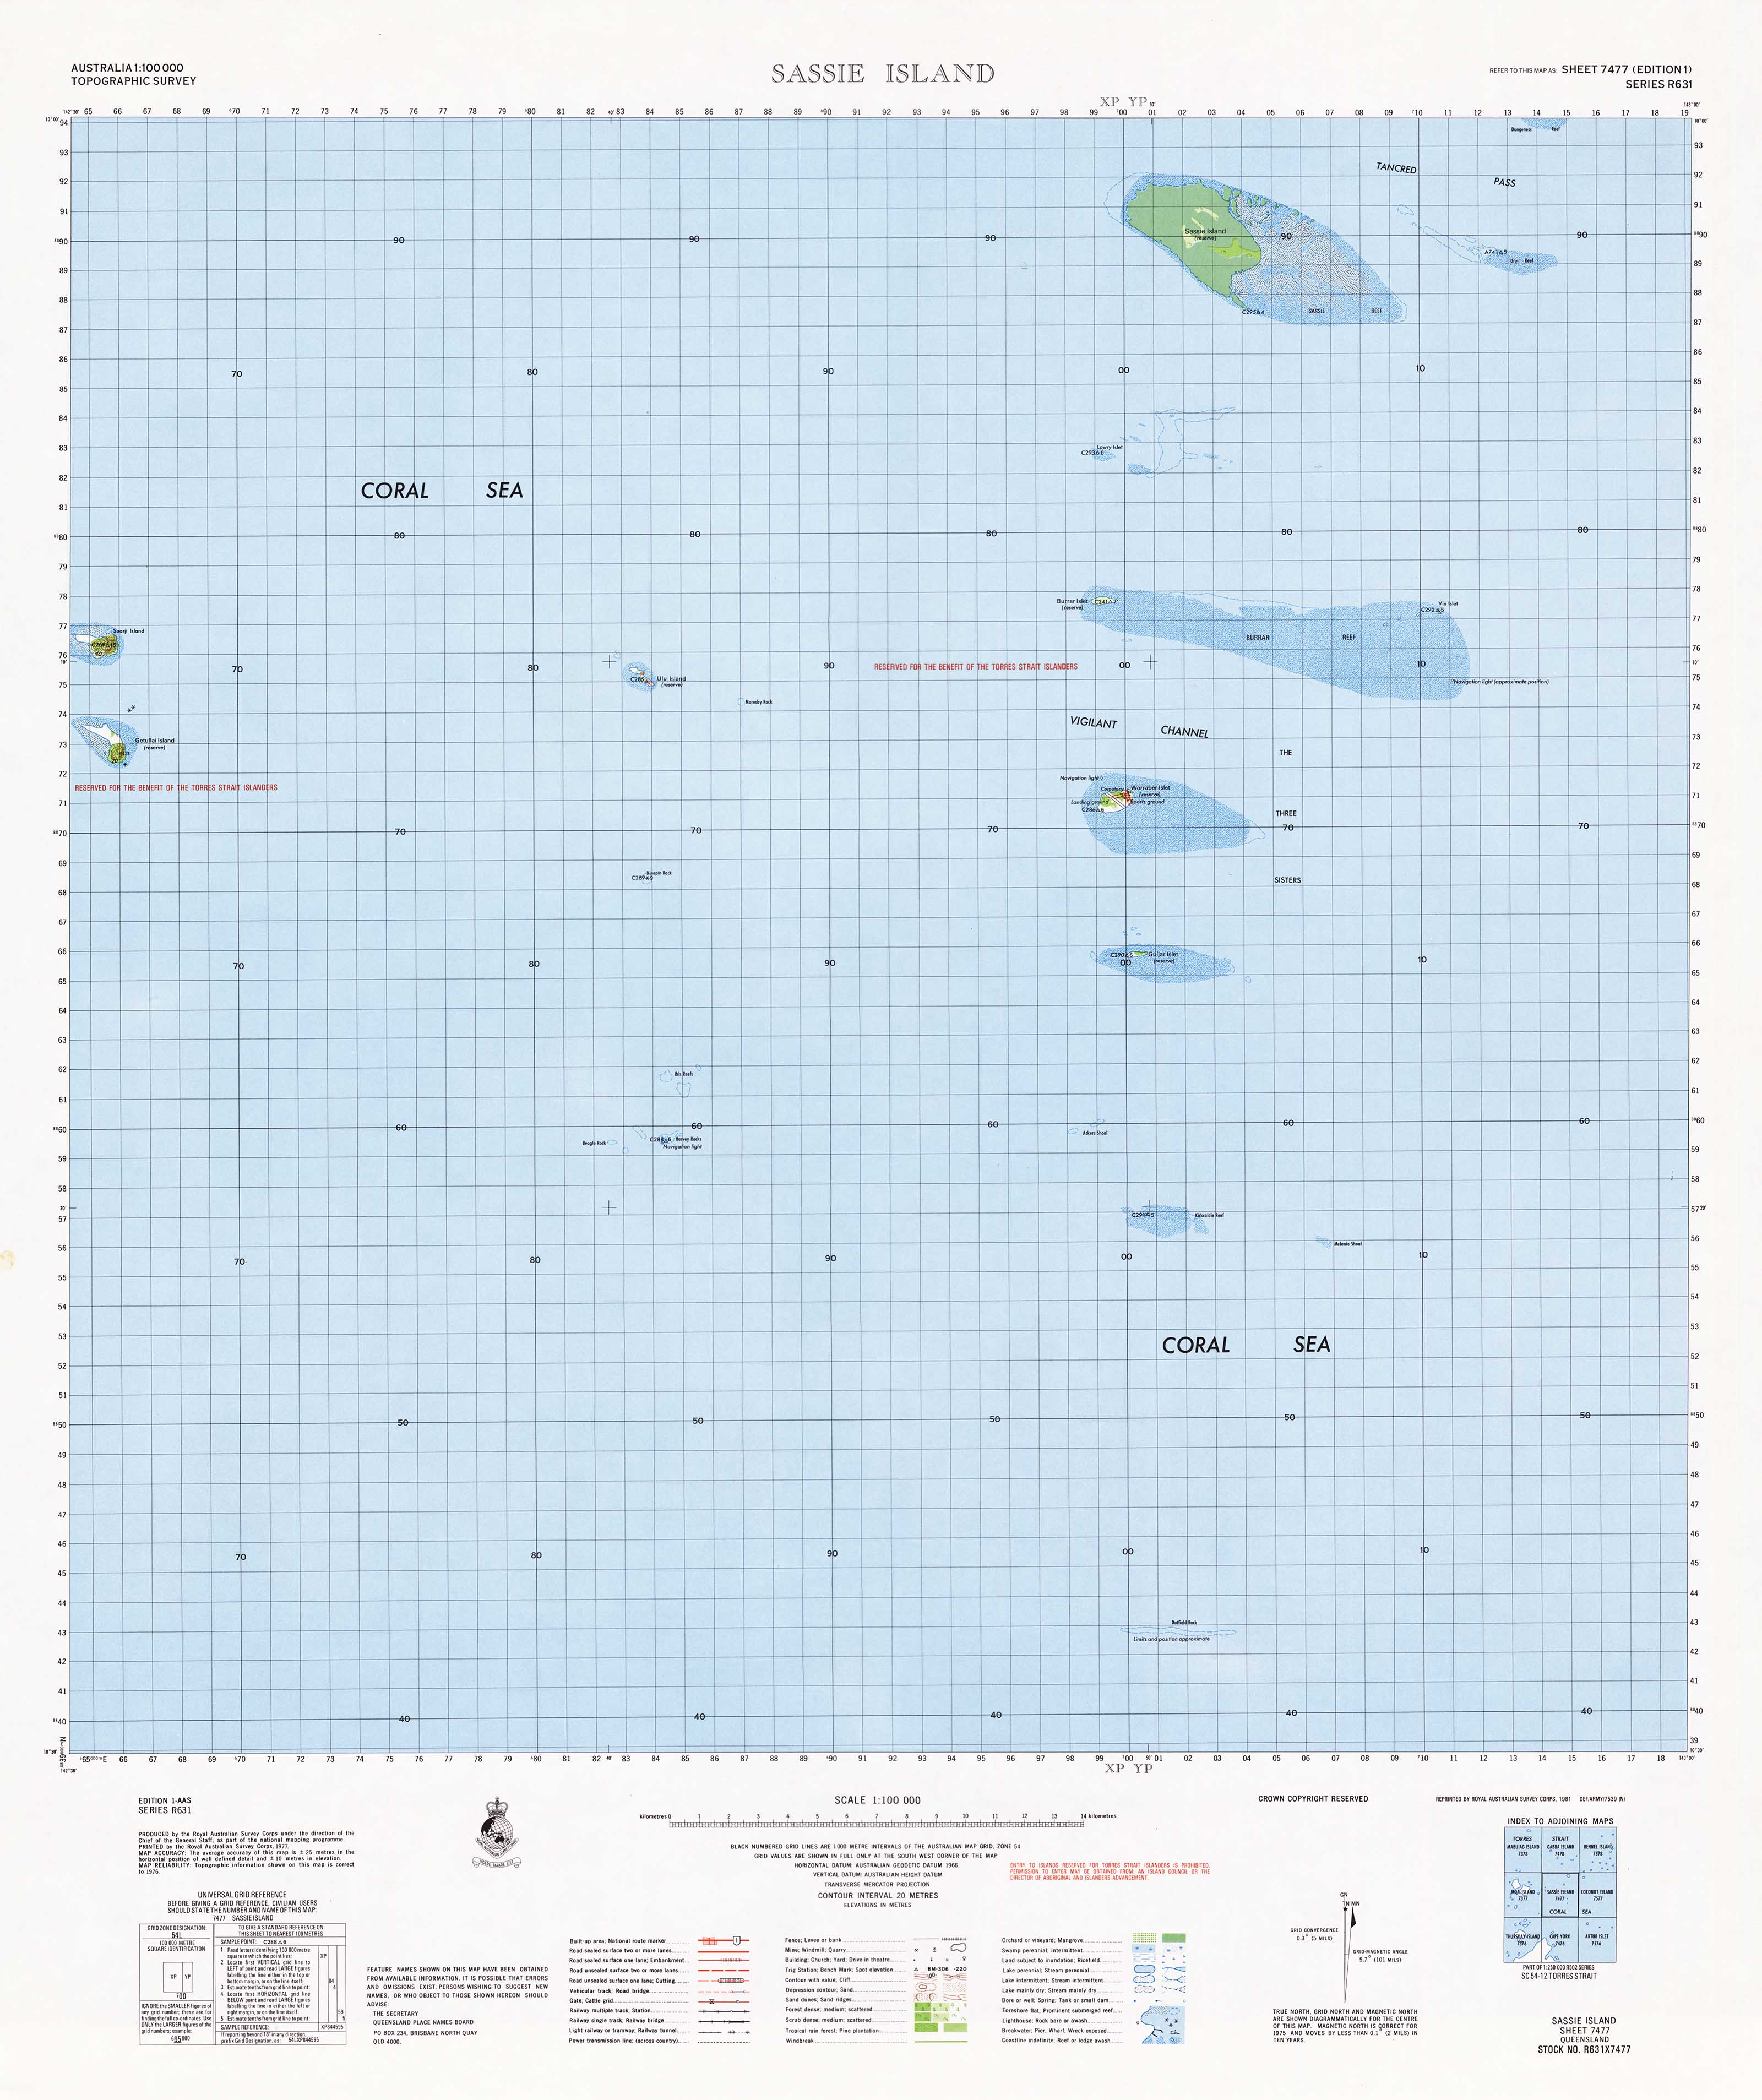 Buy 7477 Sassie Island 1:100k Topographic Map